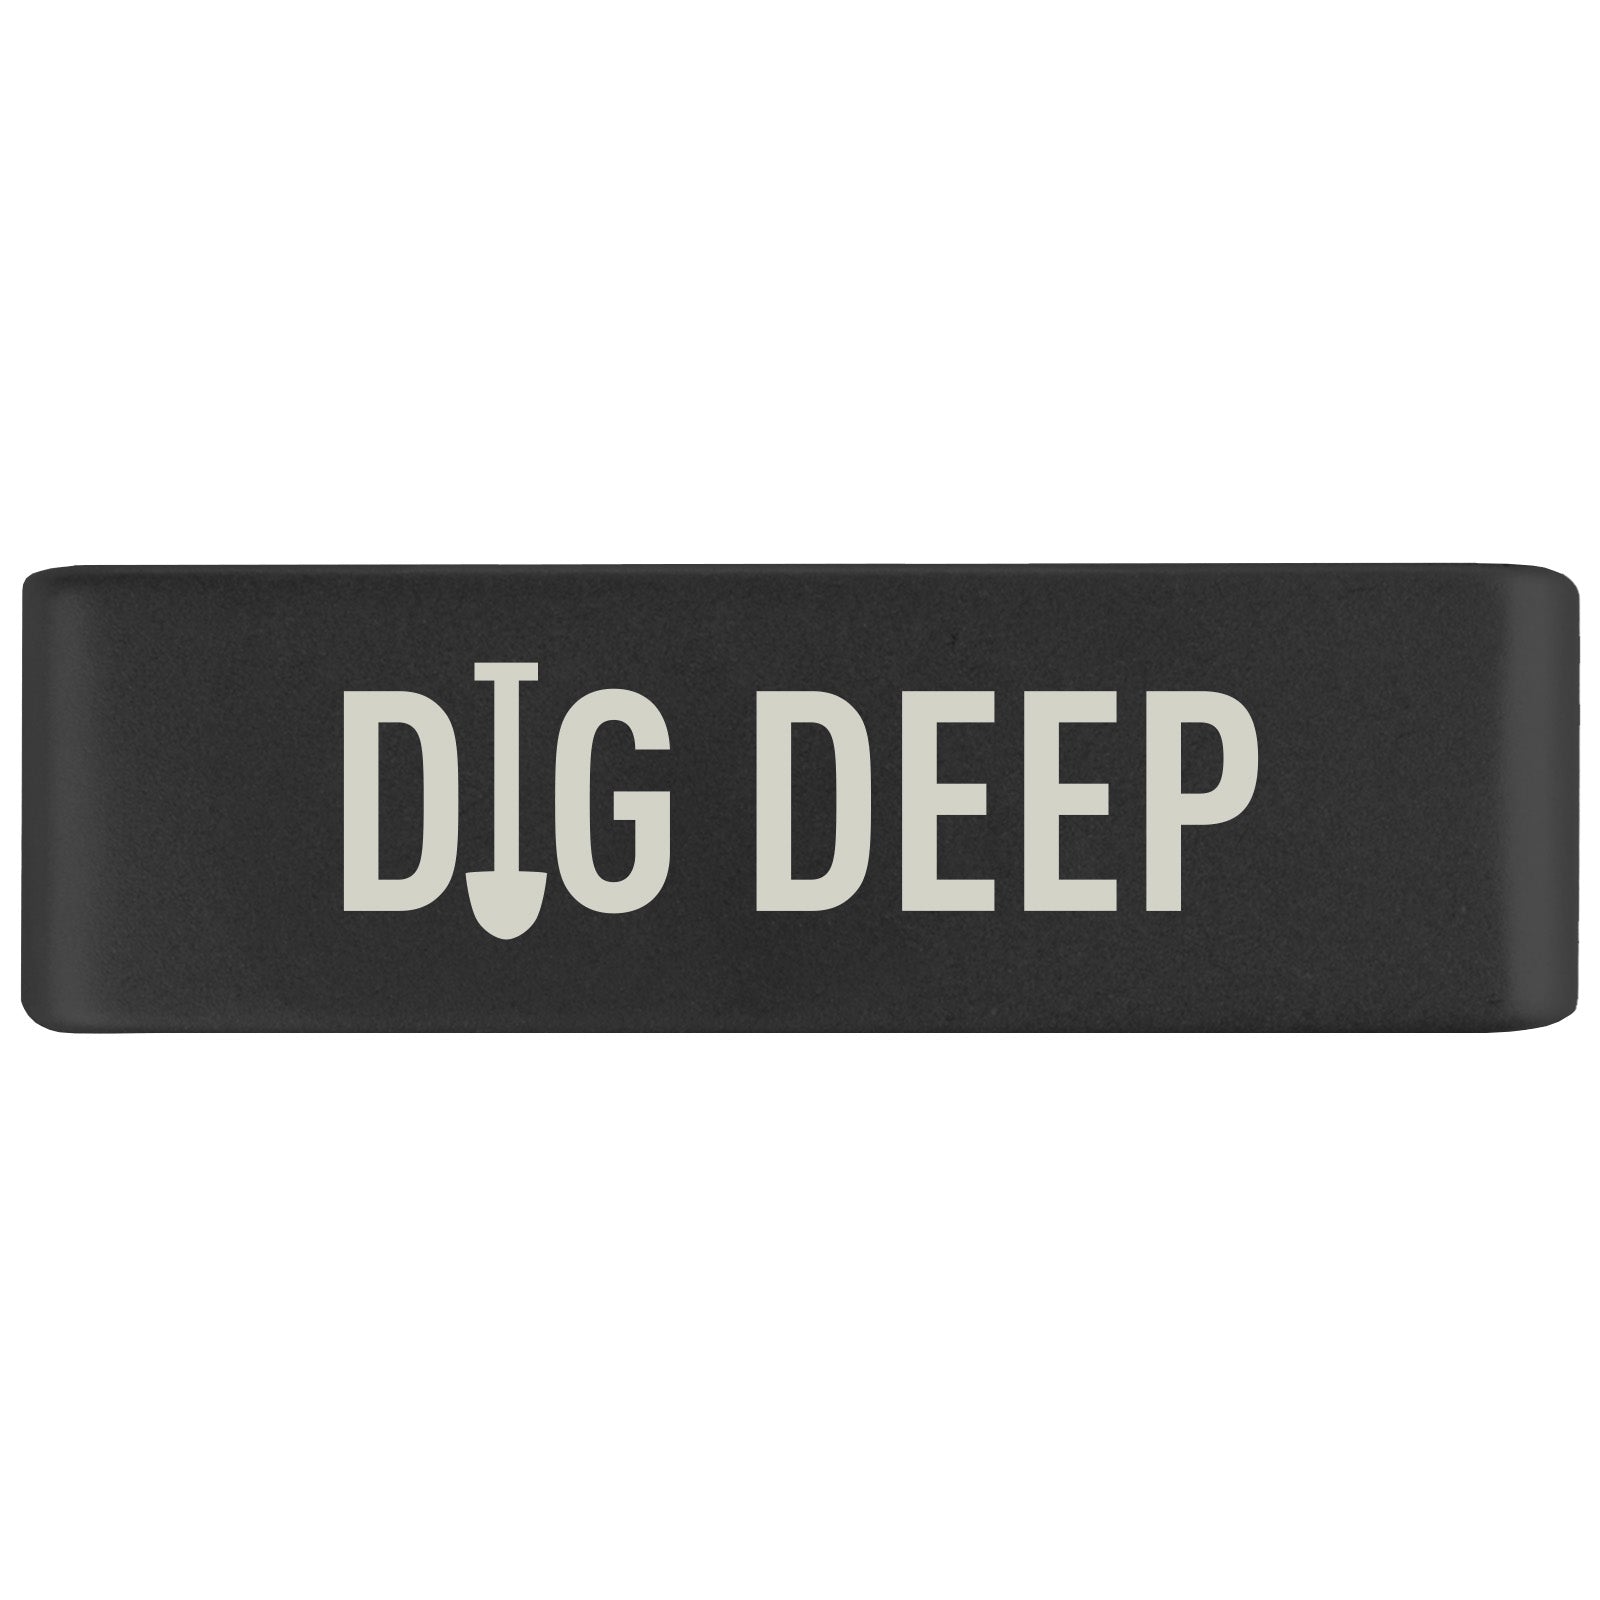 Dig Deep Badge Badge 19mm - ROAD iD